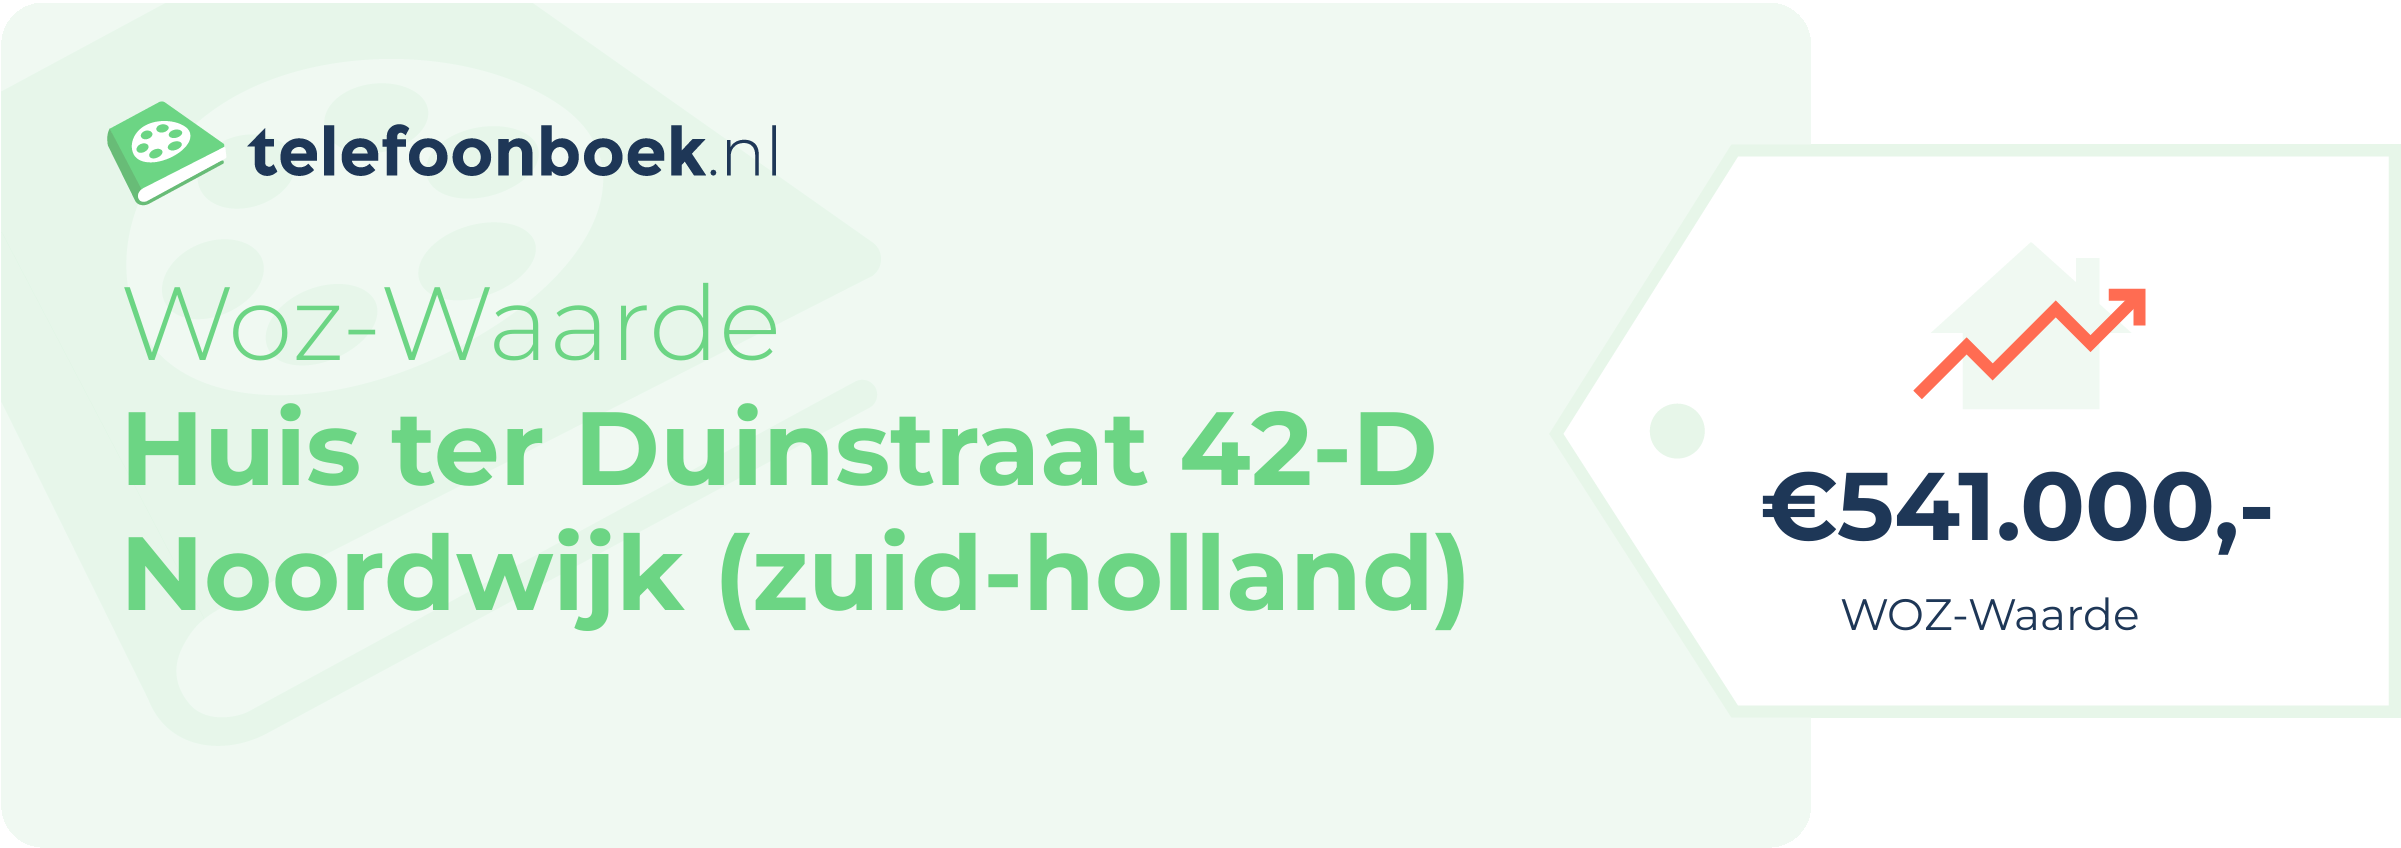 WOZ-waarde Huis Ter Duinstraat 42-D Noordwijk (Zuid-Holland)